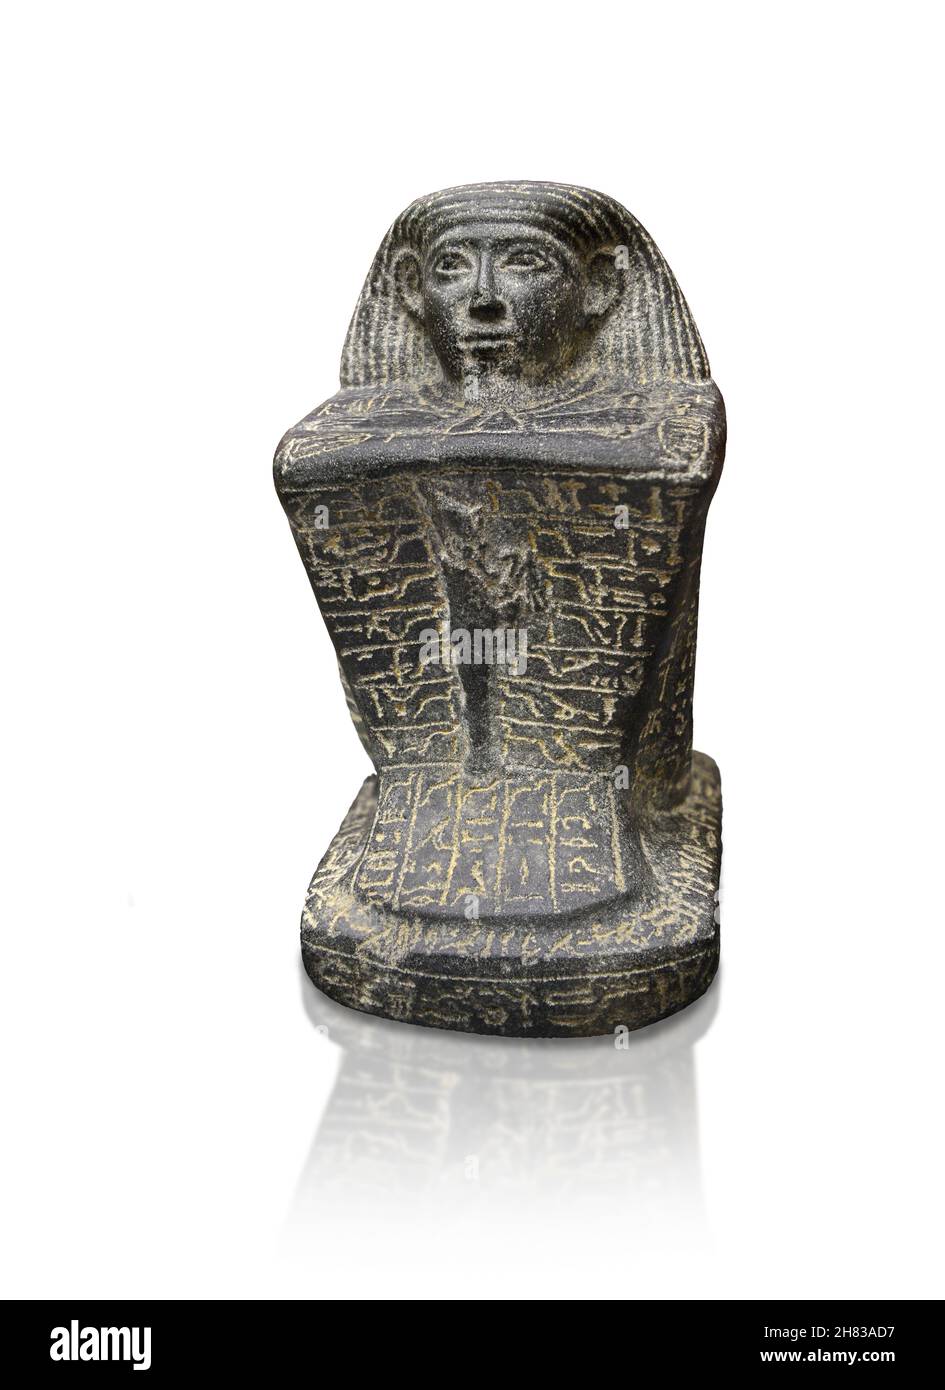 Alte ägyptische Würfel Block Statue von Horemtabat, 660 v. Chr., 25th Dynastie. Kunsthistorisches Museum Wien Inv. AS 9639. Granire Höhe 32 cm Breite 15,8 Stockfoto